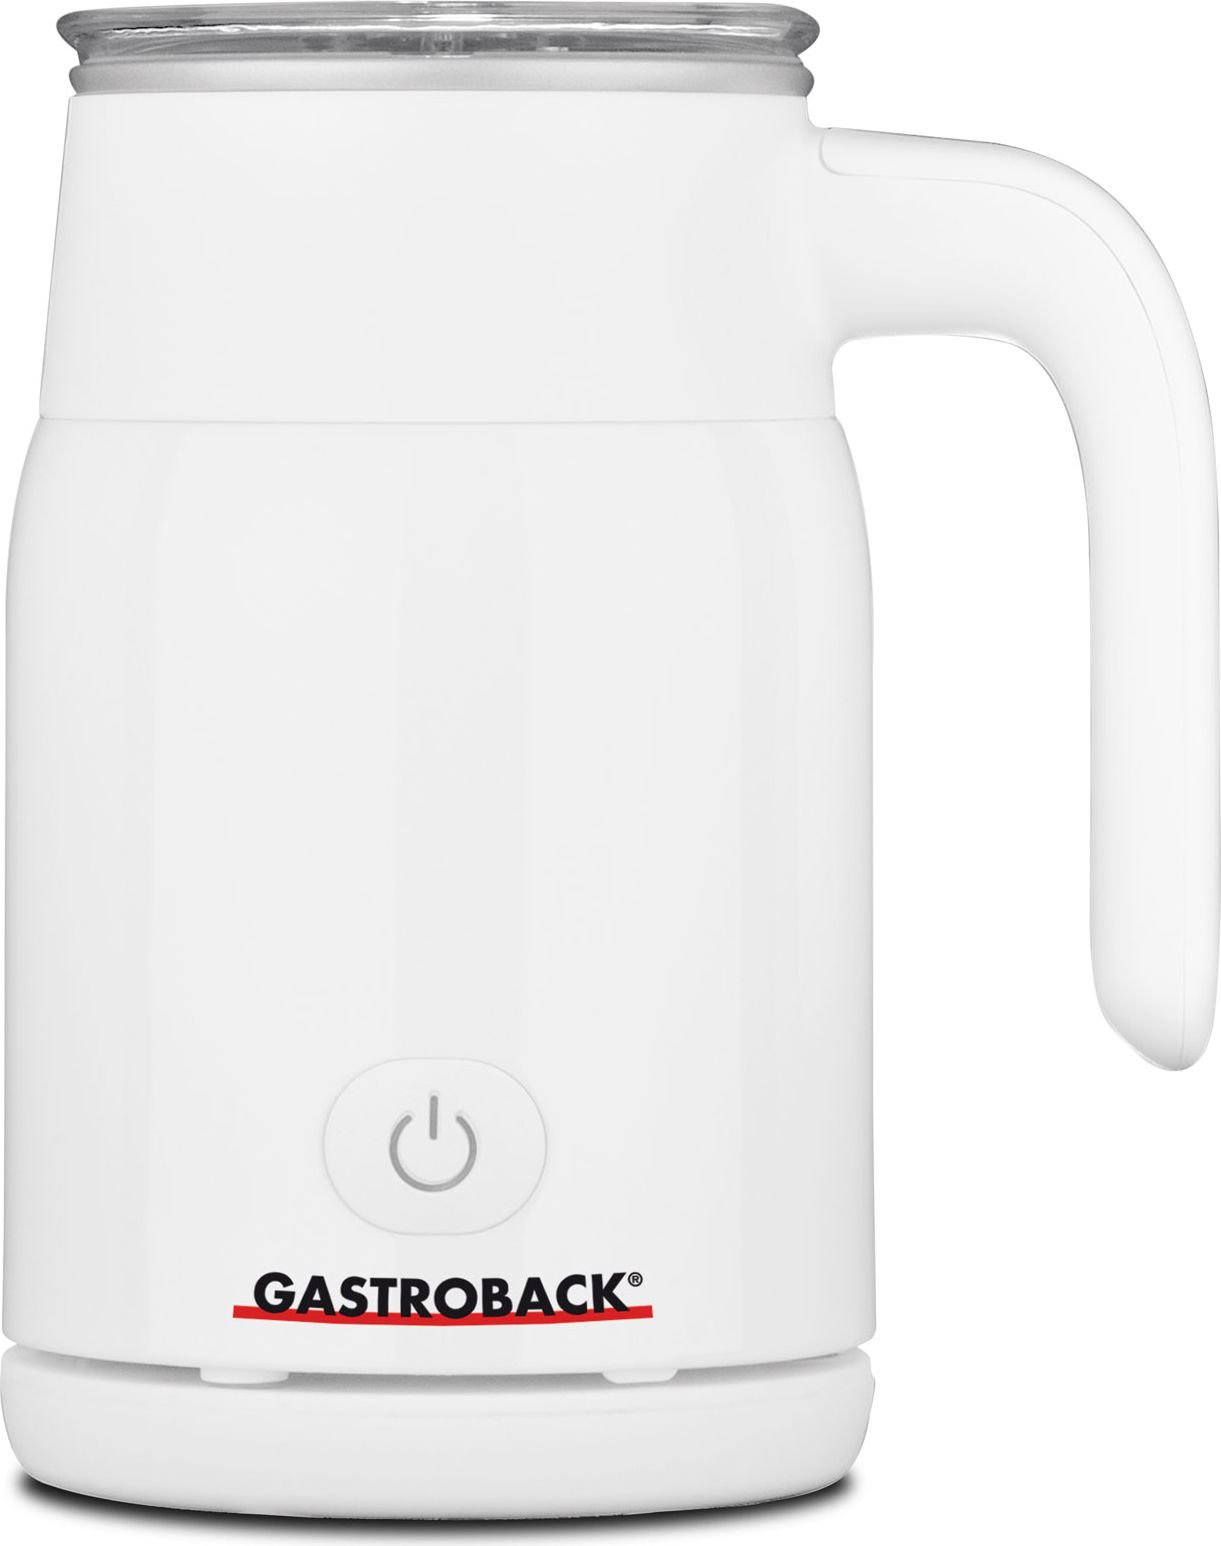 Accesorii si piese aparate cafea - Spumator de lapte Gastroback White (42325)